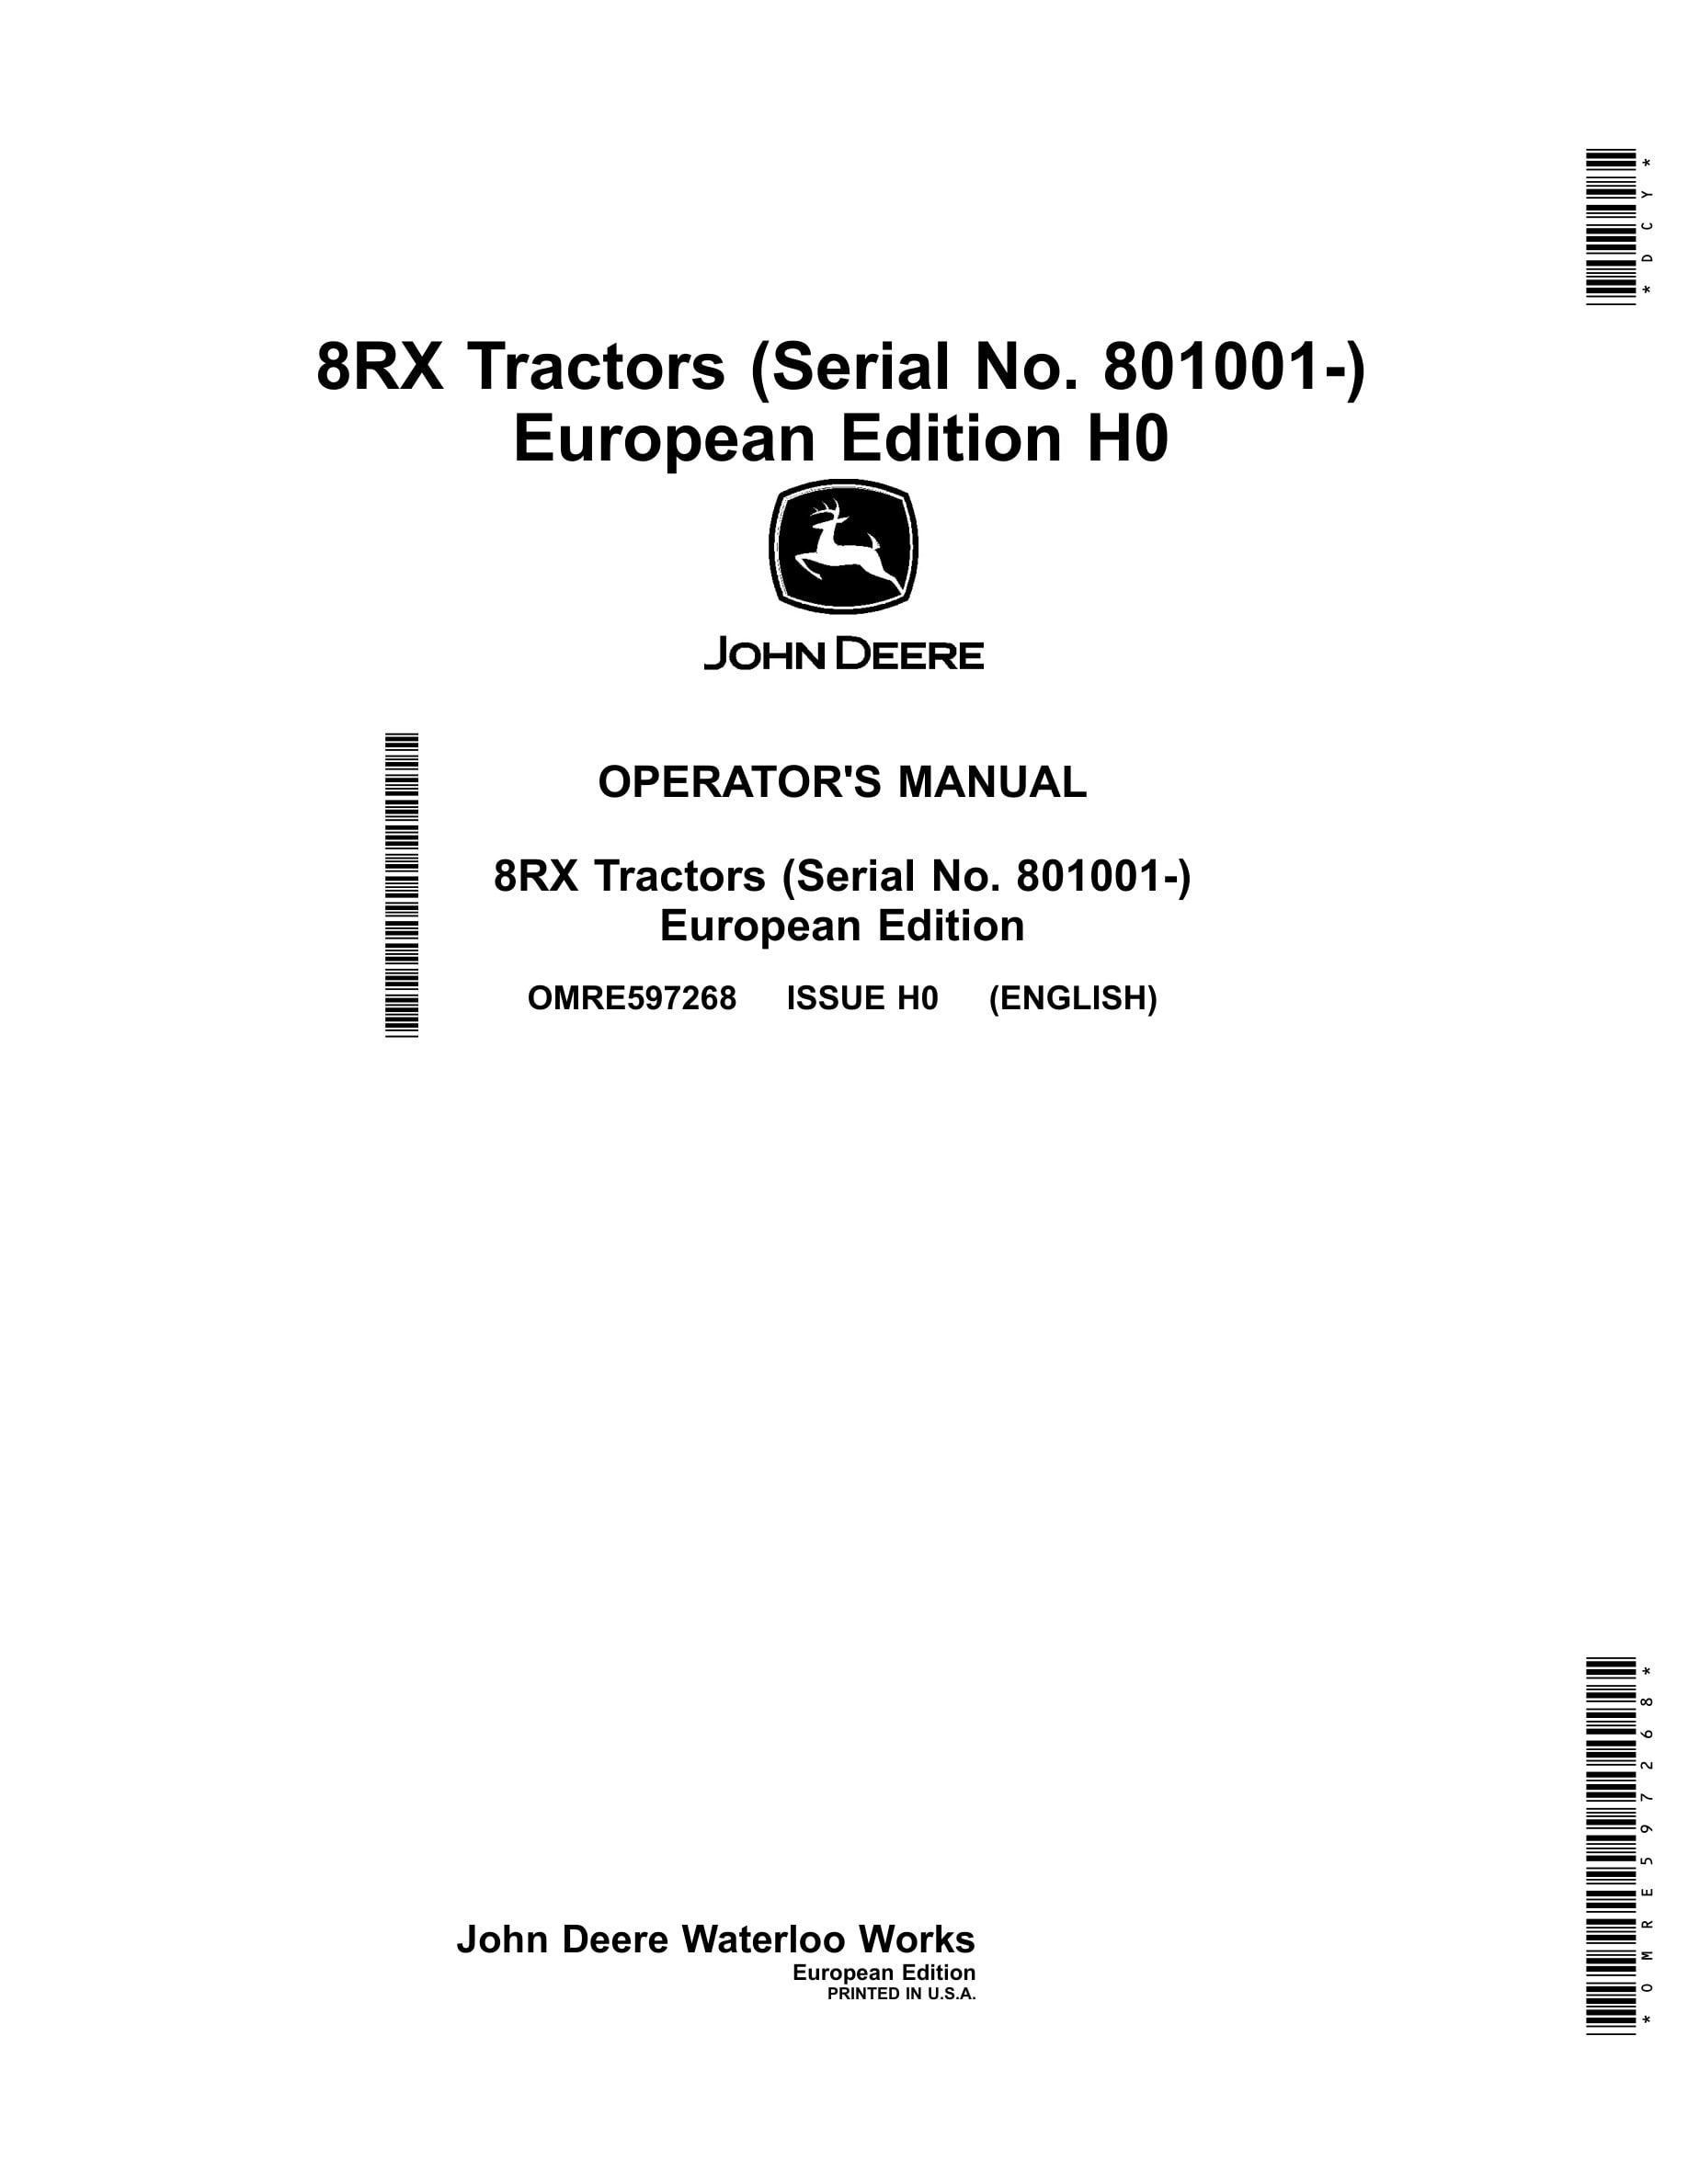 John Deere 8rx Tractors Operator Manuals OMRE597268-1